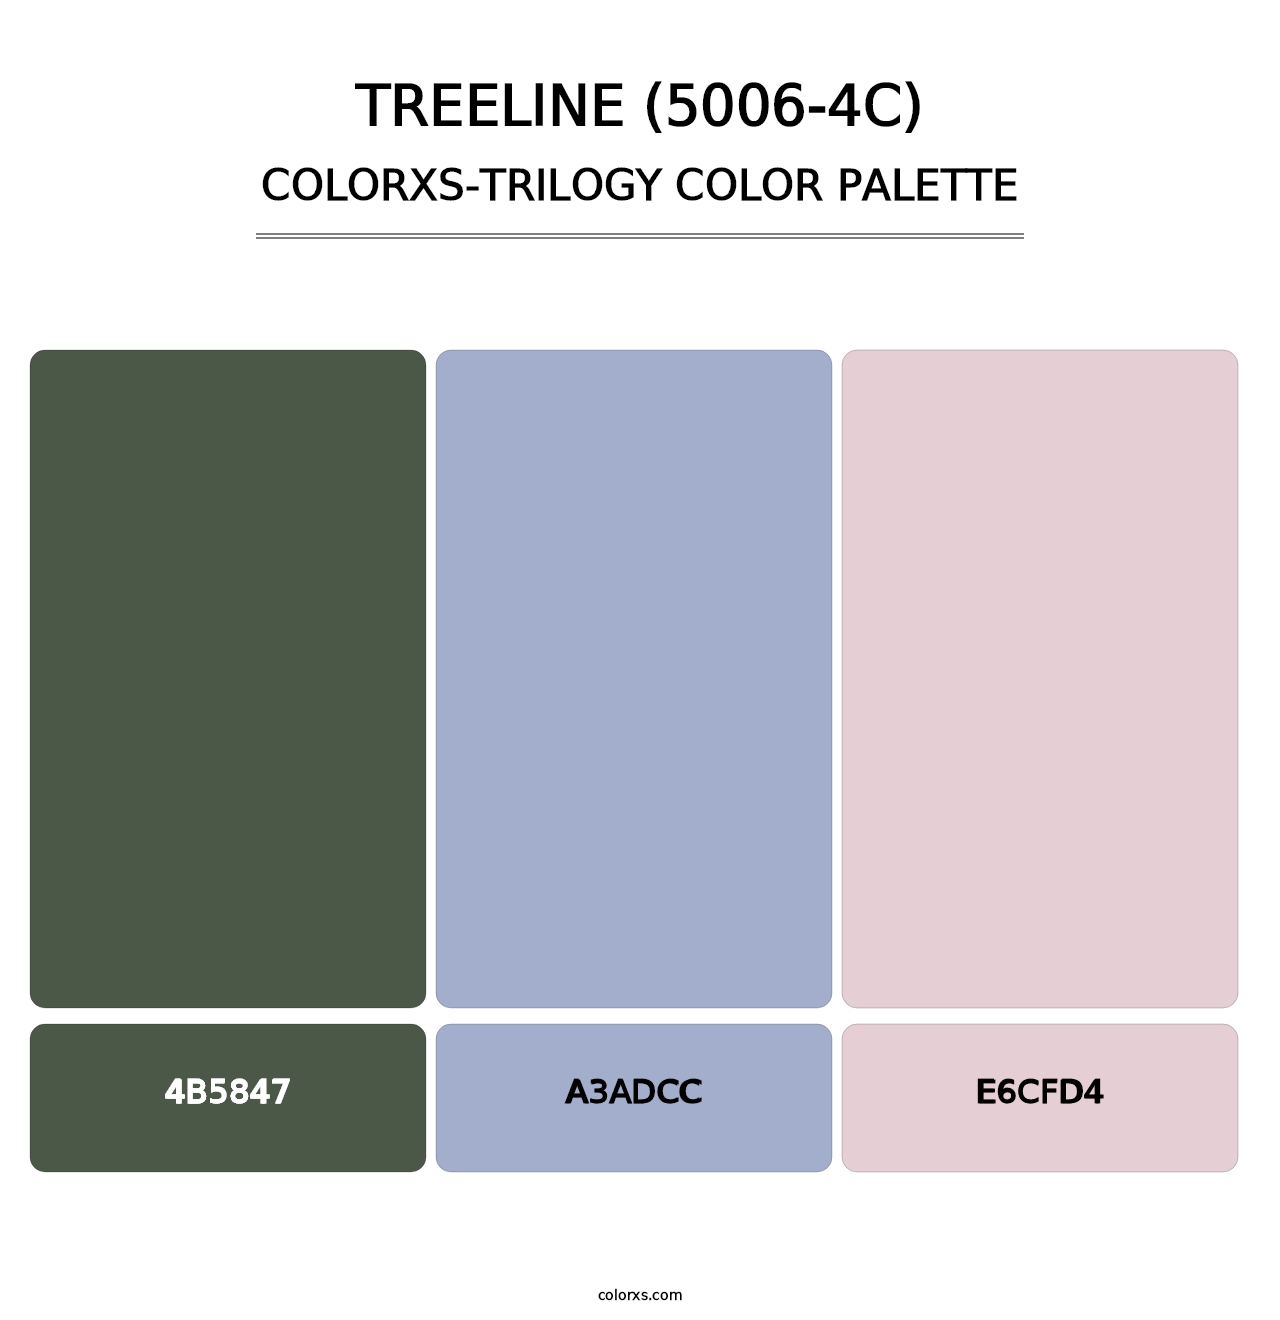 Treeline (5006-4C) - Colorxs Trilogy Palette